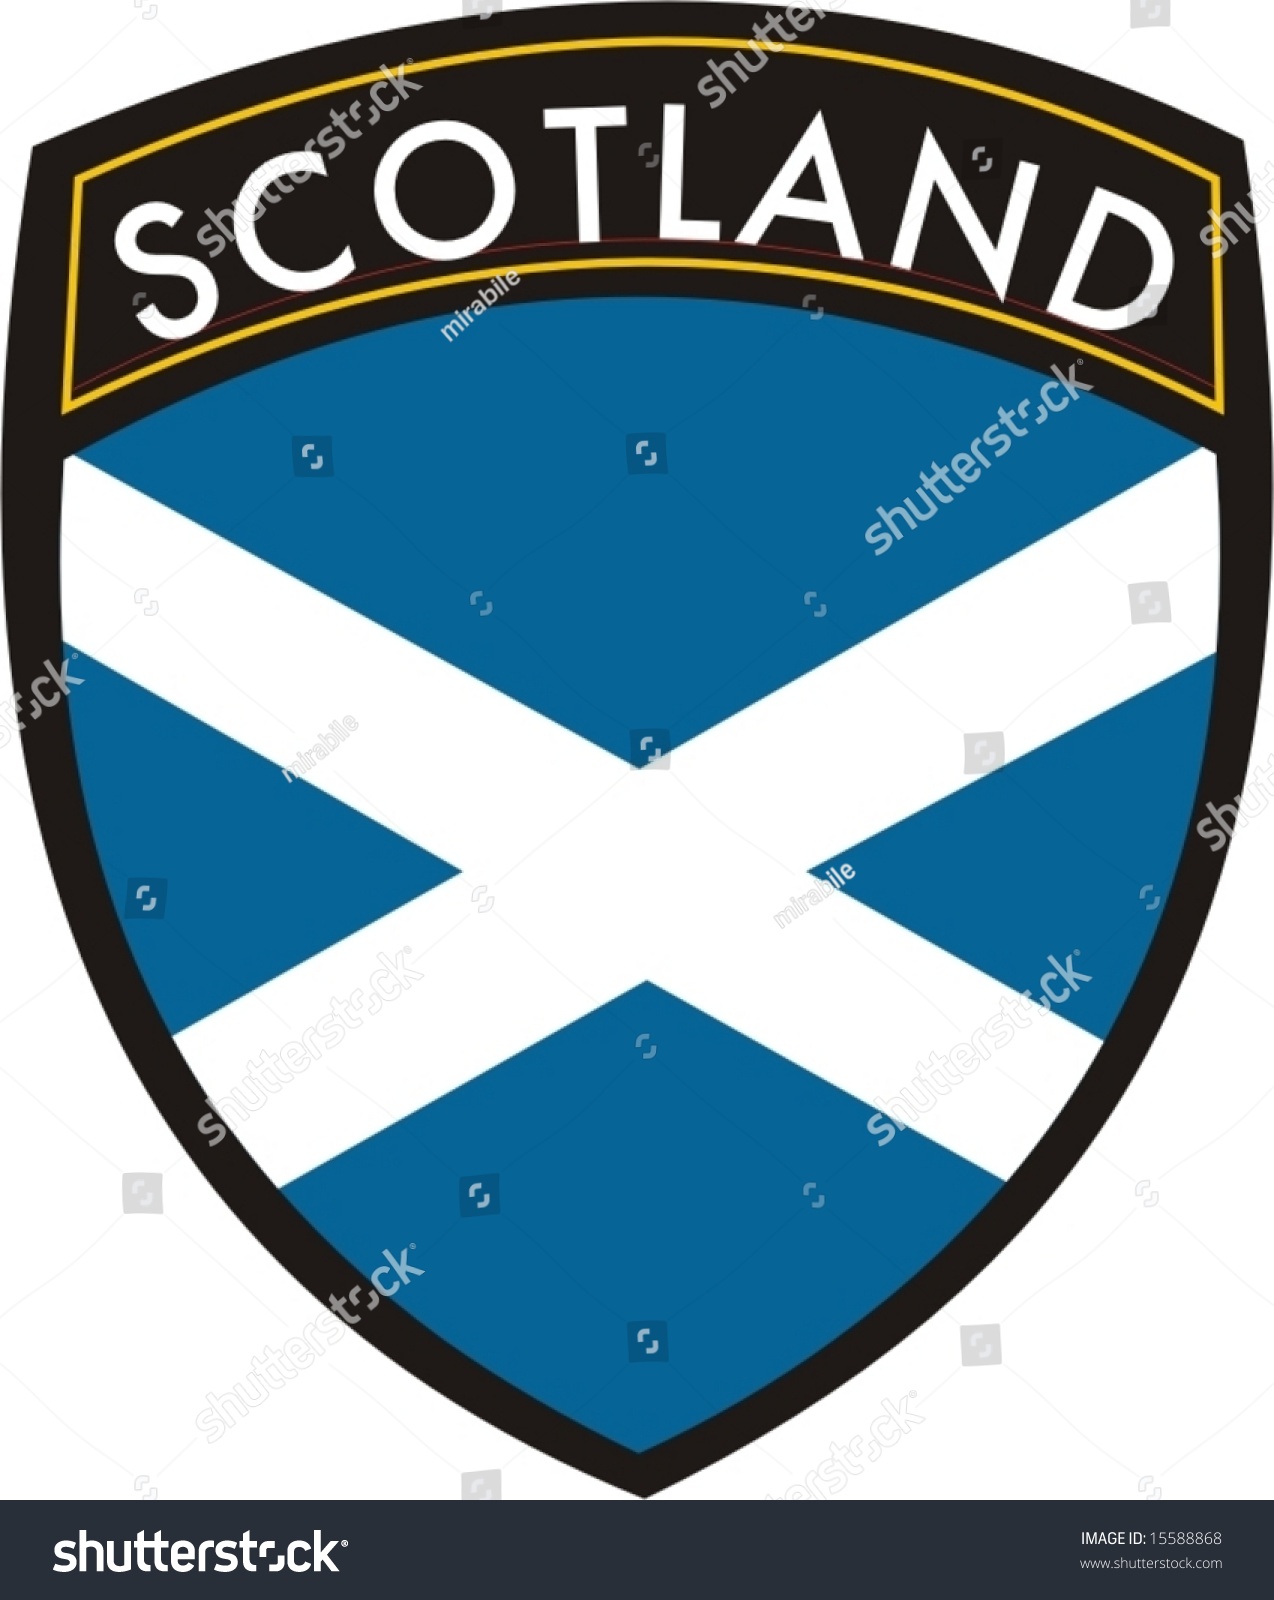 clipart scotland flag - photo #42